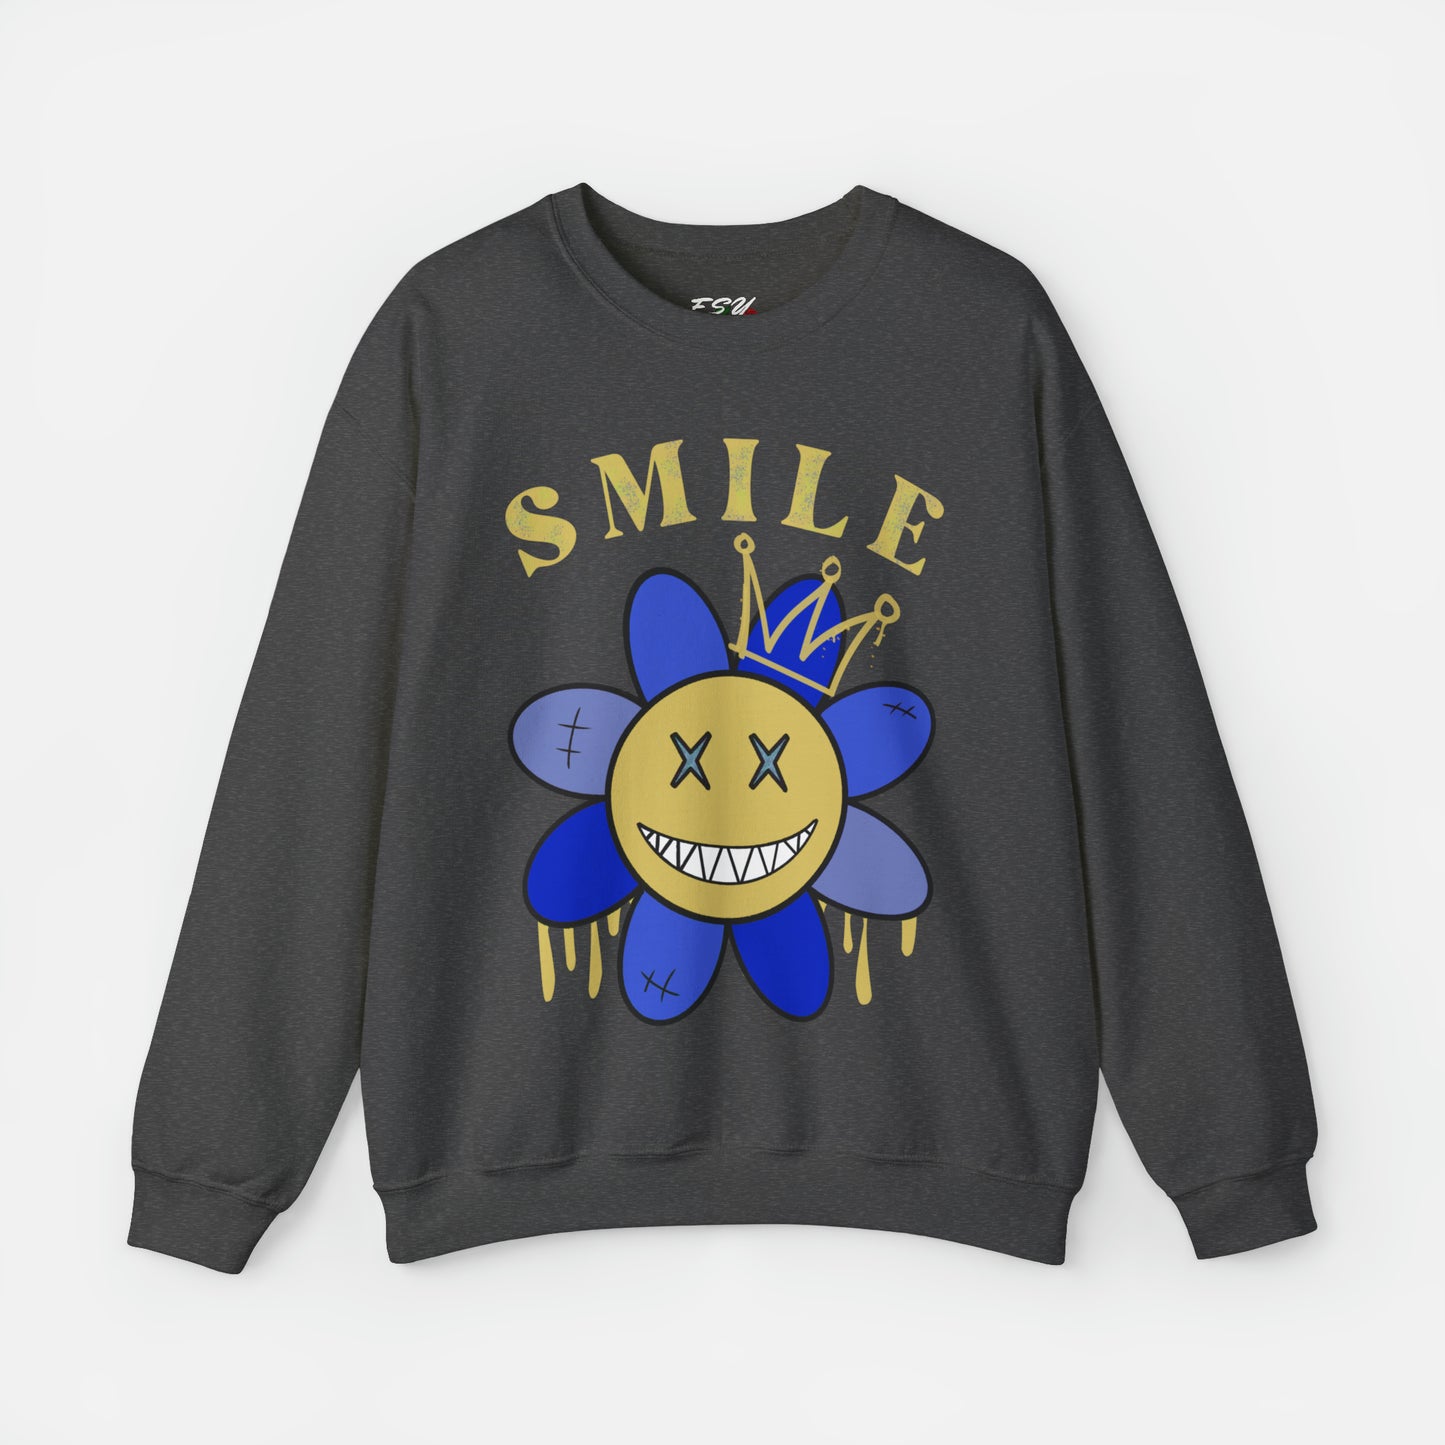 Smile - Sweatshirt